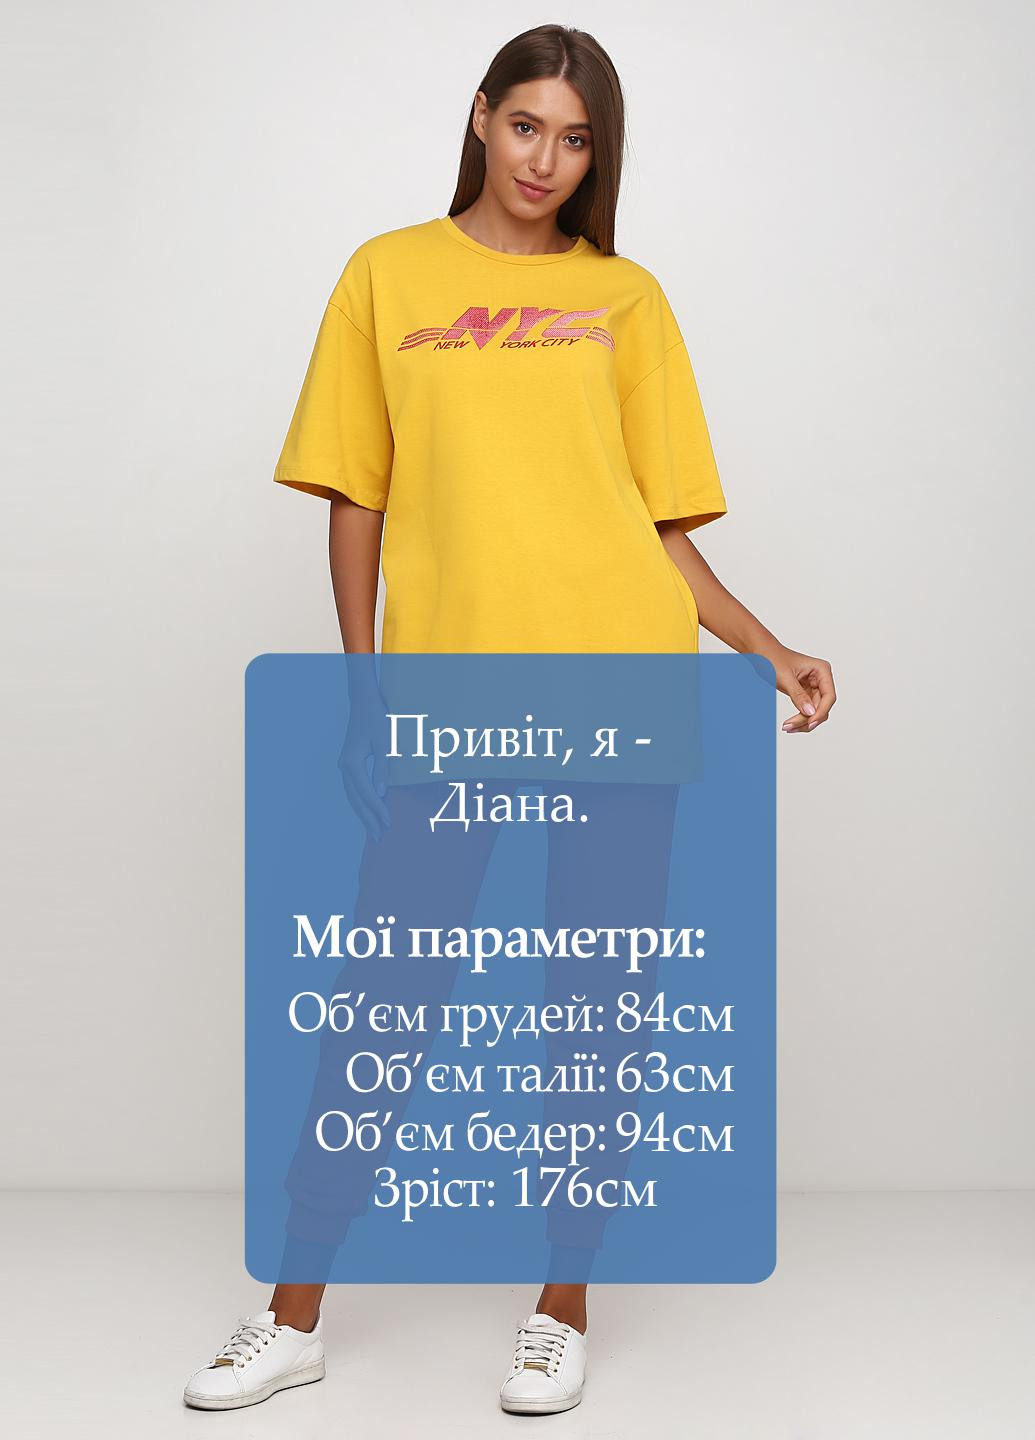 Оранжевые спортивные демисезонные джоггеры брюки Kristina Mamedova